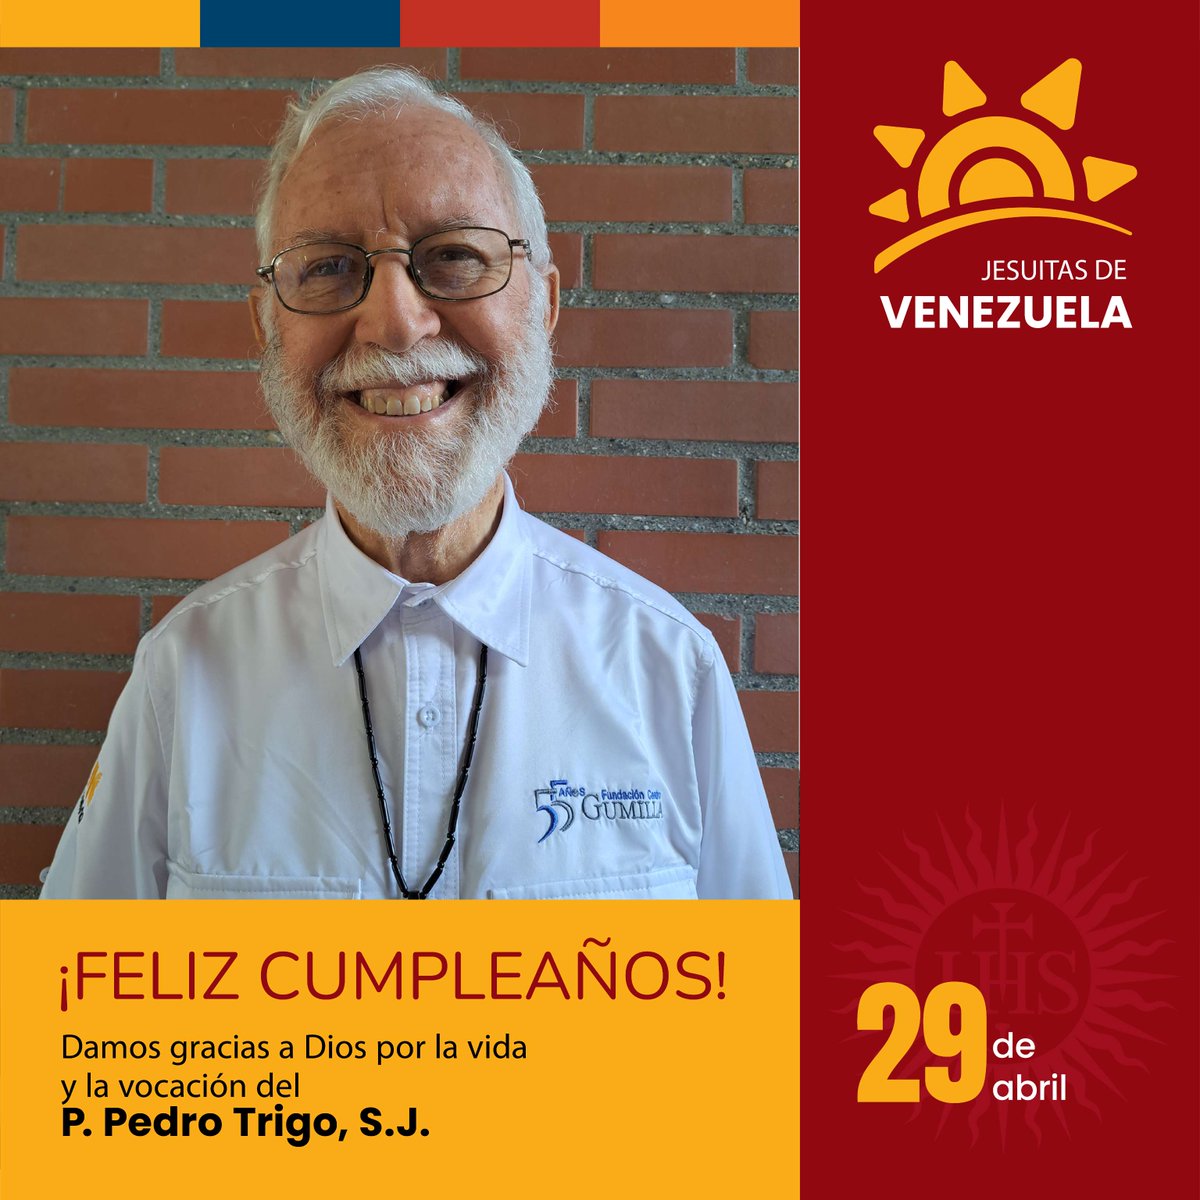 Hoy 29 de abril queremos celebrar con ustedes el cumpleaños del P. Pedro Trigo, S.J., damos gracias a Dios por su vida y vocación.

#EnTodoAmarYServir